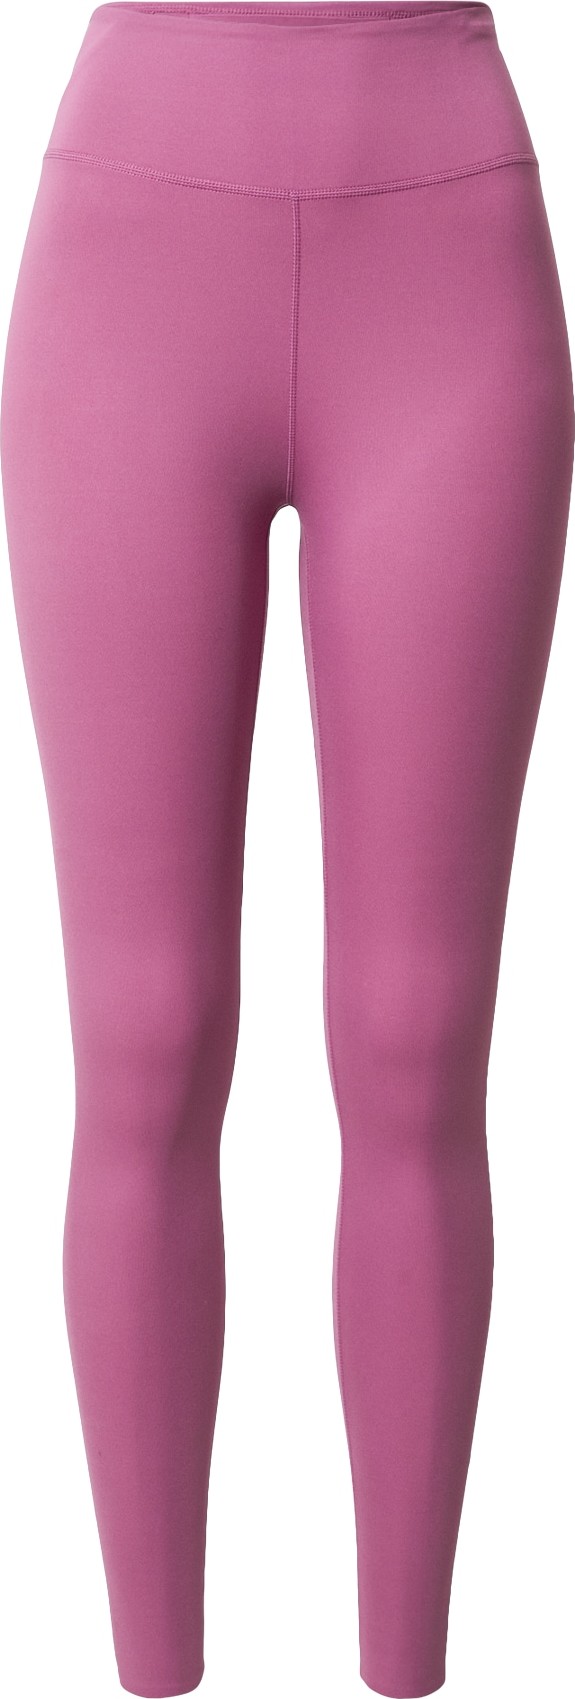 NIKE Sportovní kalhoty 'One Luxe' fialová